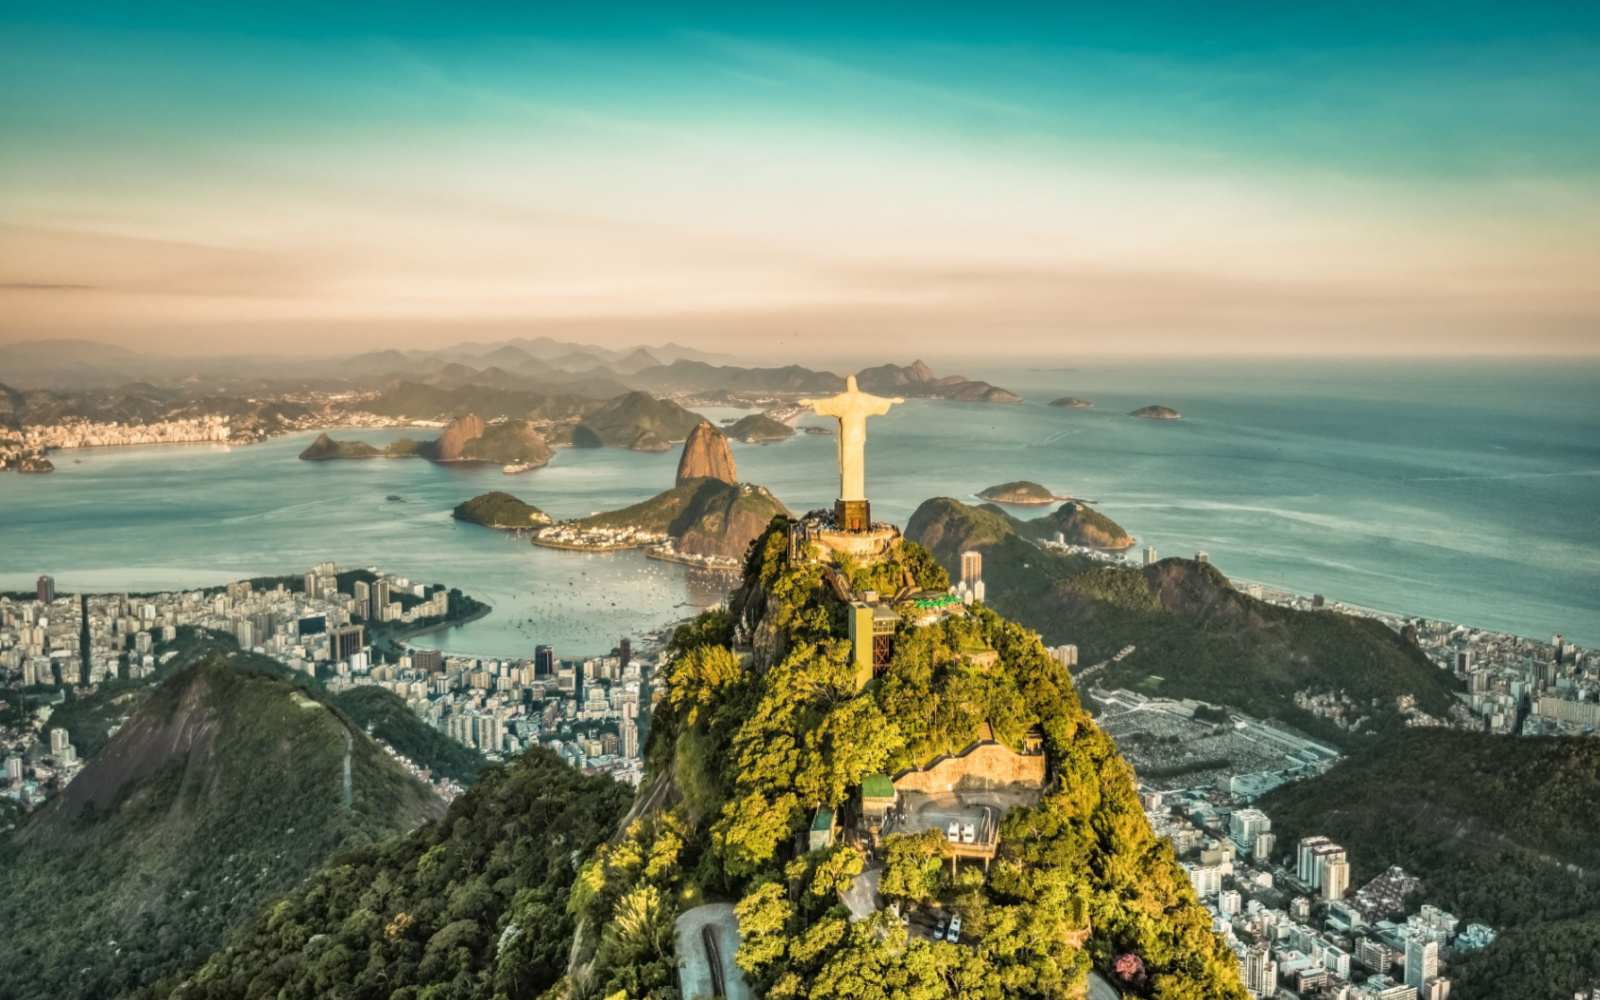 Is Brazil Safe? | Travel Tips & Safety Concerns